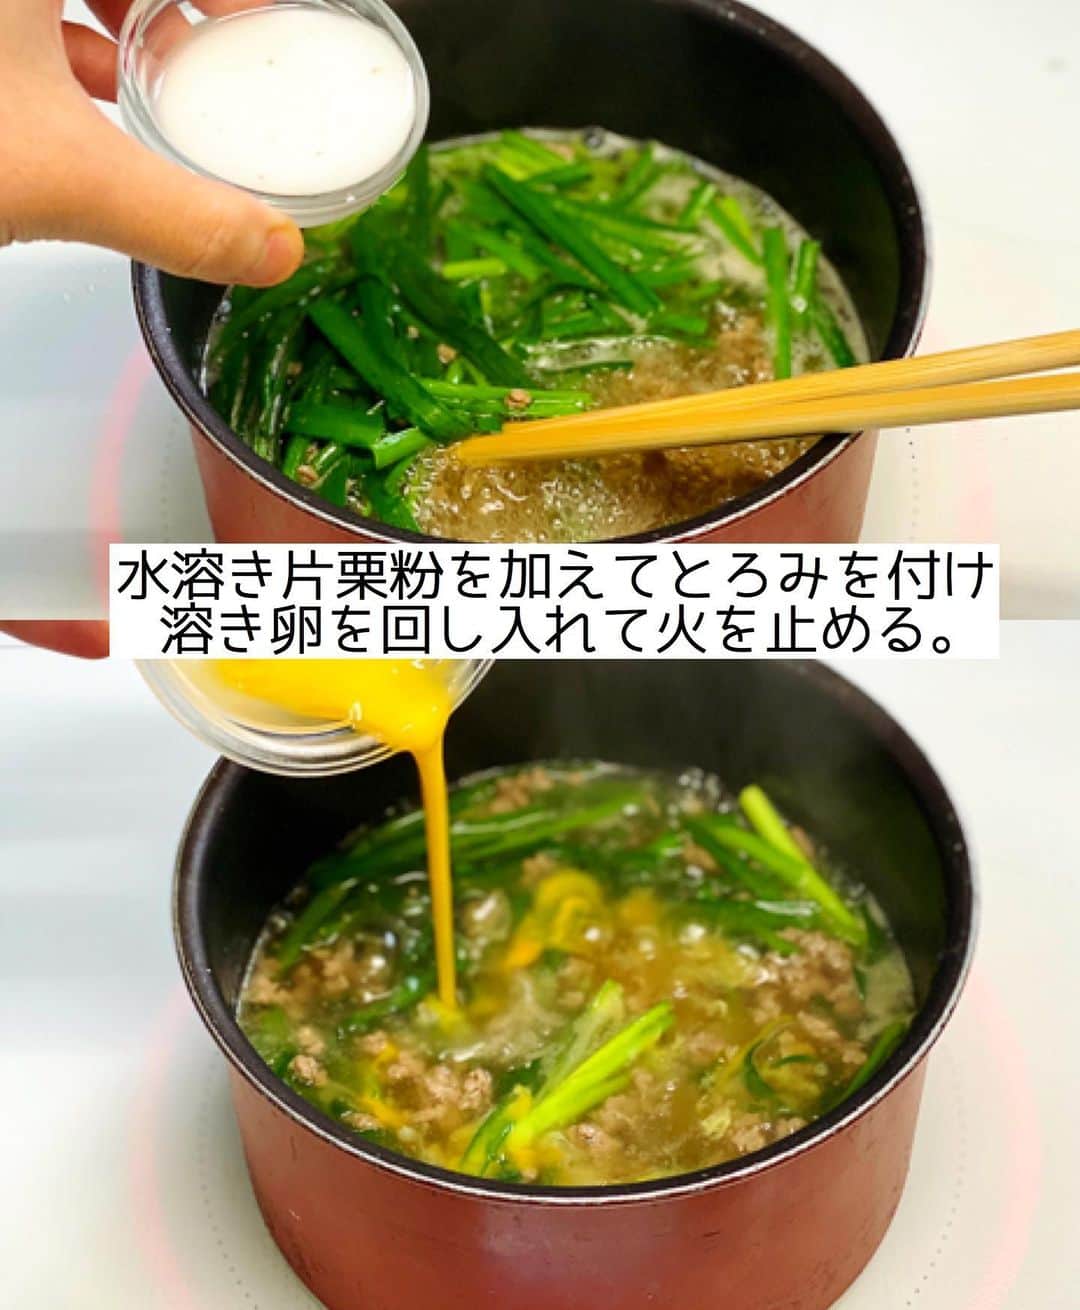 Mizuki【料理ブロガー・簡単レシピ】さんのインスタグラム写真 - (Mizuki【料理ブロガー・簡単レシピ】Instagram)「・﻿ 【#レシピ 】ーーーーーーーーーー﻿ ♡ひき肉とニラのとろ玉スープ♡﻿ ーーーーーーーーーーーーーーーー﻿ ﻿ ﻿ ﻿ おはようございます(*^^*)﻿ ﻿ 今日はあったかスープレシピ☆﻿ 具沢山おかずスープのご紹介です♩﻿ ひき肉のコクにニラの香り﻿ たまごの優しい風味が好相性♡﻿ スープにとろみを付けるから﻿ たまごがふ〜んわり仕上がりますよ♩﻿ ﻿ これ、ごはんにかけて﻿ スープごはんにするのもおすすめ♡﻿ とっても簡単にできるので﻿ よかったらお試し下さいね(*´艸`)﻿ ﻿ ﻿ ﻿ ＿＿＿＿＿＿＿＿＿＿＿＿＿＿＿＿＿＿＿＿﻿ 【2人分】﻿ 豚ひき肉...100g﻿ ニラ...1/2束﻿ 卵...1個﻿ ごま油...小1﻿ 片栗粉...小2﻿ ●水...400ml﻿ ●鶏がらスープ...大1/2﻿ ●醤油...小1﻿ ●塩こしょう...少々﻿ いりごま...少々﻿ ﻿ 1.ニラは4cm長さに切る。卵は溶きほぐす。片栗粉は水大1(分量外)で溶いて水溶き片栗粉を作る。﻿ 2.鍋にごま油を中火で熱してひき肉を炒める。色が変わったら●を加え、煮たったらニラを加えてさっと煮る。﻿ 3.水溶き片栗粉を加えてとろみを付け、溶き卵を回し入れ、ふんわりしたら火を止める。仕上げにごまを振る。﻿ ￣￣￣￣￣￣￣￣￣￣￣￣￣￣￣￣￣￣￣￣﻿ ﻿ ﻿ ﻿ 《ポイント》﻿ ♦︎水溶き片栗粉を加えたら手早く混ぜてとろみを付けて下さい♩﻿ ﻿ ﻿ ﻿ ﻿ ﻿ ﻿ ﻿ ﻿ ⭐️発売中⭐️3刷重版が決まりました😭﻿ 本当にありがとうございます(涙)﻿ _____________________________________﻿ \15分でいただきます/﻿ 📕#Mizukiの2品献立 📕﻿ (9月24日発売・マガジンハウス)﻿ ￣￣￣￣￣￣￣￣￣￣￣￣￣￣￣￣￣﻿ ﻿ 忙しい私たちには﻿ 2品くらいがちょうどいい！﻿ 『しんどくない献立、考えました』﻿ ￣￣￣￣￣￣￣￣￣￣￣￣￣￣￣￣﻿ ﻿ ーーーーーPART.1 ーーーーー﻿ 【Mizukiのお墨つき！２品献立ベスト10】﻿ 約15分でできる10献立をご紹介！﻿ メインは全部フライパン、副菜はレンチンor混ぜるだけ♡﻿ ﻿ ーーーーーPART.2 ーーーーー﻿ 【フライパンひとつ！今夜のメインおかず】﻿ 献立の主役になる肉や魚のおかず50品！﻿ Part3の副菜と組み合わせれば﻿ 献立のバリエーションが広がりますよ♩﻿ ﻿ ーーーーー PART.3 ーーーーー﻿ 【合間に作れる！ 野菜別かんたん副菜】﻿ レンチンor和えるだけの副菜レシピを﻿ 素材別にたっぷり収録♩﻿ ﻿ ーーーーー番外編ーーーーー﻿ 【ひとつで満足！ご飯＆麺】﻿ 【具だくさん！おかずスープ】﻿ 【オーブンいらずのおやつレシピ】﻿ ￣￣￣￣￣￣￣￣￣￣￣￣￣￣￣￣￣￣﻿ (ハイライトにリンク🔗あります💗)﻿ ﻿ ﻿ ﻿ ﻿ ＿＿＿＿＿＿＿＿＿＿＿＿＿＿＿＿＿＿﻿ 🔔テレビ出演のお知らせ🔔﻿ 10月12日〜22日までの2週間(月〜木)﻿ 【NHK Eテレ まる得マガジン 】が﻿ 再放送されています☺️﻿ 俳優の武田航平さん﻿ (@kouhei_takeda.official )と一緒に﻿ 絶品おやつから意外なランチまで﻿ たくさん作らせていただきますよ♩﻿ ﻿ ＊NHKテキスト発売中です📕﻿ ￣￣￣￣￣￣￣￣￣￣￣￣￣￣￣￣￣￣﻿ ﻿ ﻿ ﻿ ﻿ ﻿ レシピを作って下さった際や﻿ レシピ本についてのご投稿には﻿ タグ付け( @mizuki_31cafe )して﻿ お知らせいただけると嬉しいです😊💕﻿ ﻿ ﻿ ﻿ ﻿ ﻿ ﻿ #スープ#おかずスープ#ひき肉#卵#Mizuki#簡単レシピ#時短レシピ#節約レシピ#料理#フーディーテーブル#マカロニメイト#おうちごはん#デリスタグラマー#料理好きな人と繋がりたい#食べ物#料理記録#おうちごはんlover#写真好きな人と繋がりたい#foodpic#cooking#recipe#lin_stagrammer#foodporn#yummy#f52grams#ひき肉とニラのとろ玉スープm」10月18日 9時50分 - mizuki_31cafe